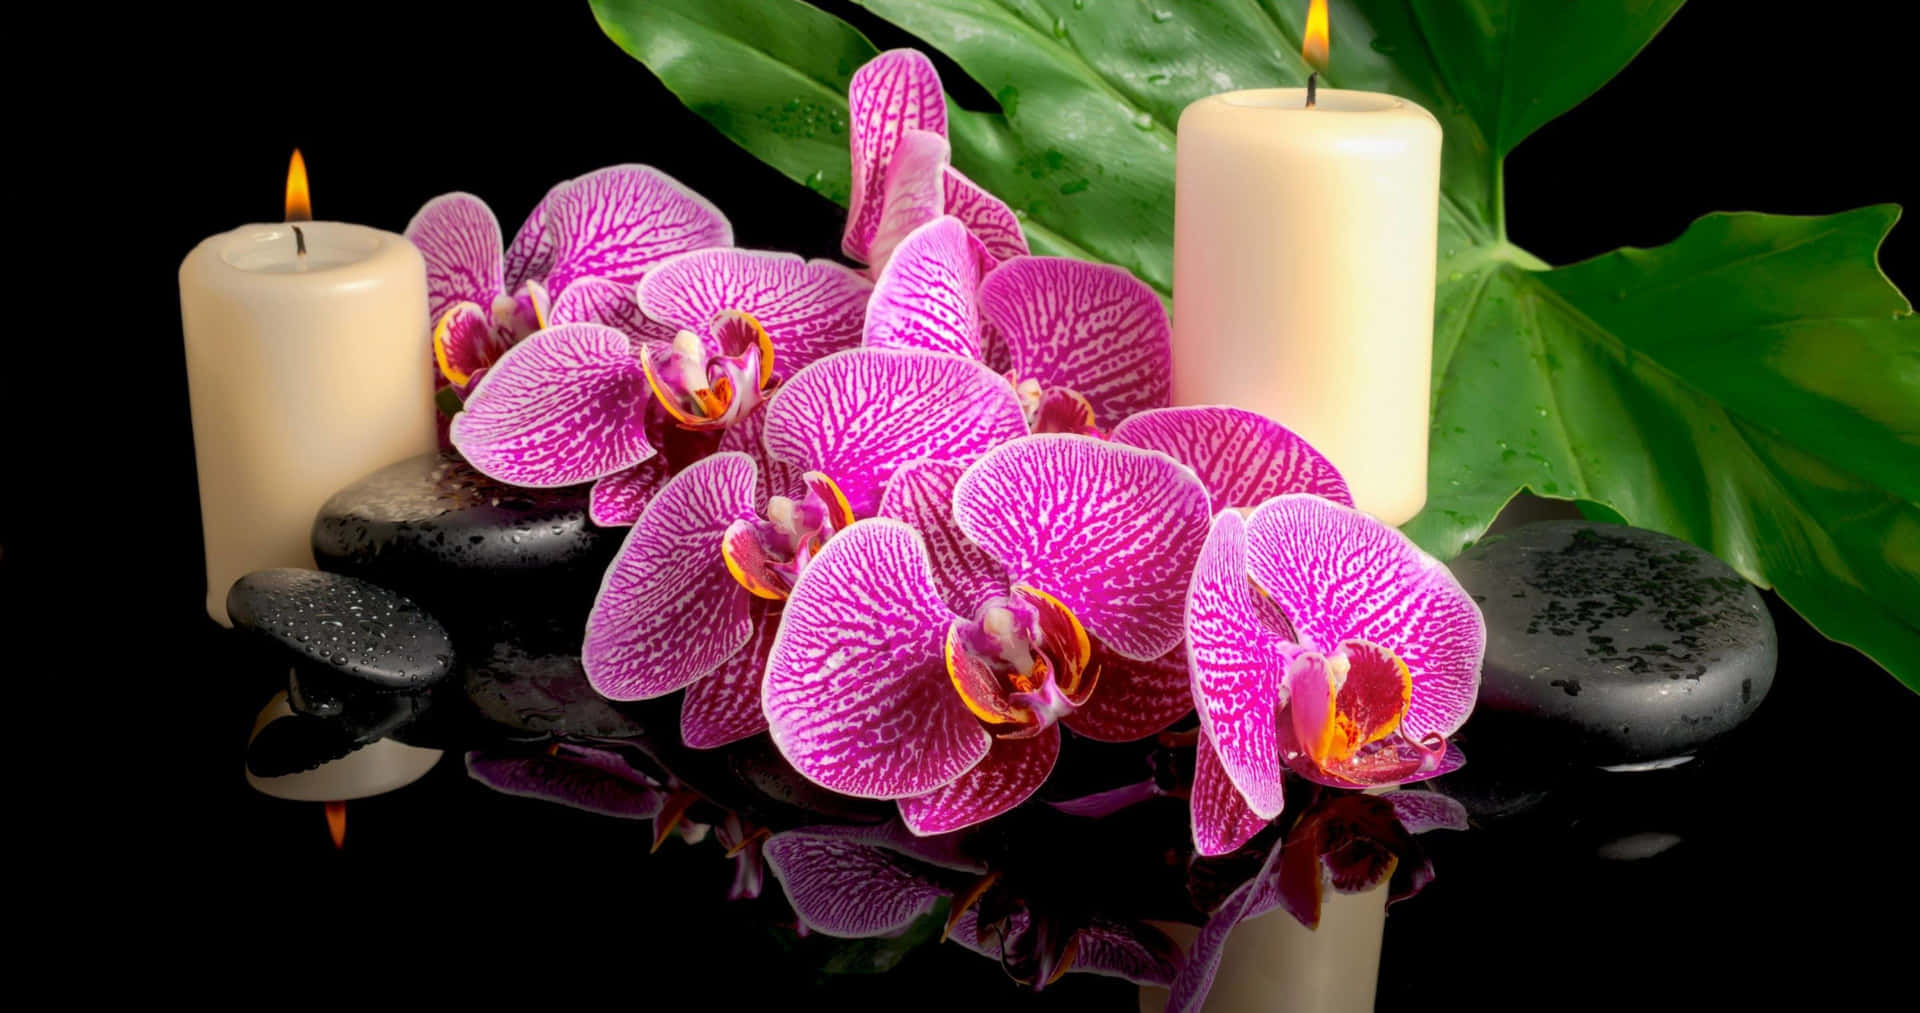 Enmagnifik Orkidé Blommar I Naturen